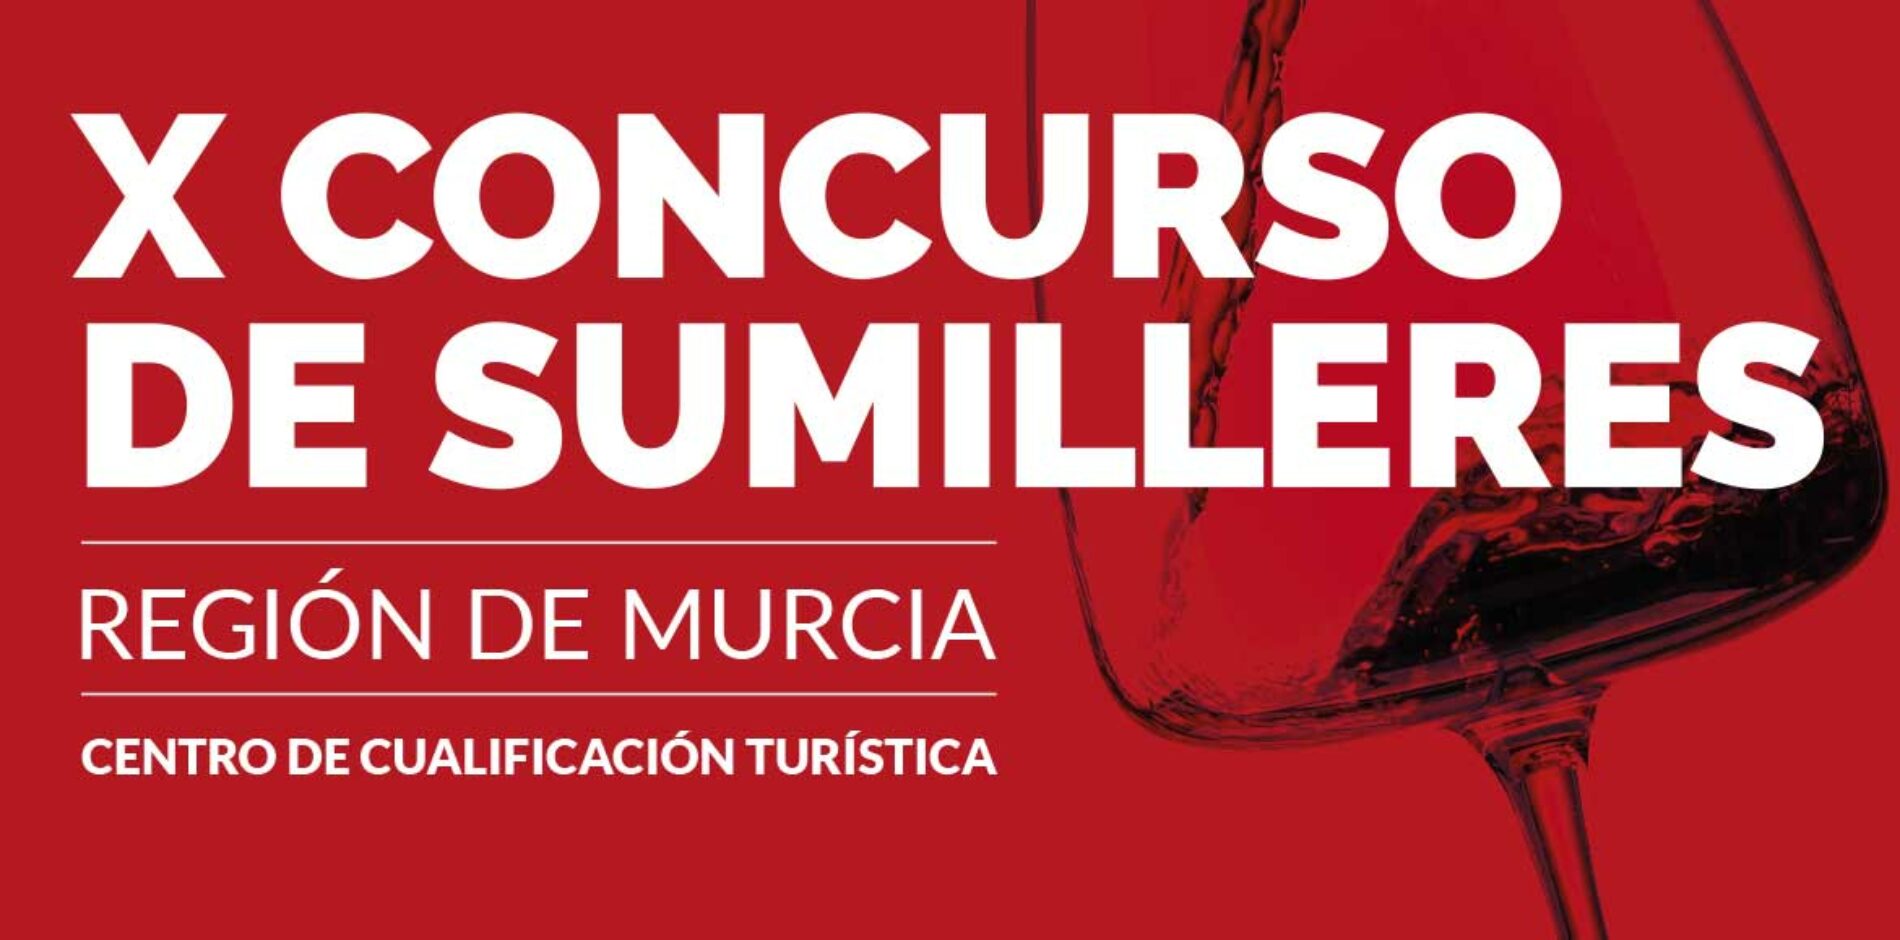 X Concurso de Sumilleres Región de Murcia – 4 Abril